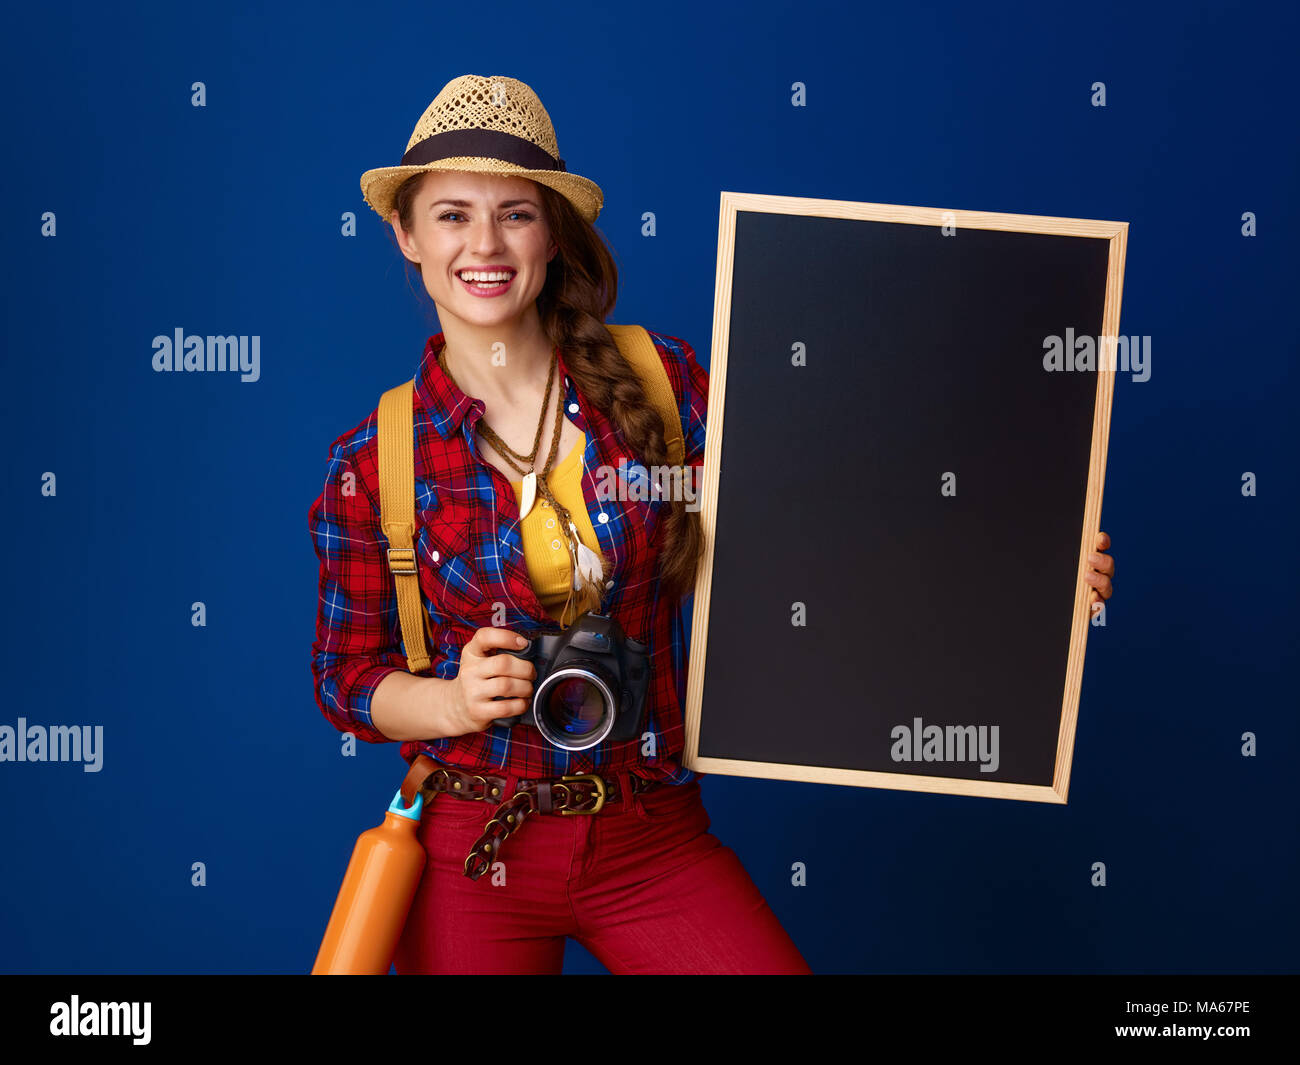 Auf der Suche nach inspirierenden Orten. glückliche junge Frau Wanderer mit Rucksack und Digitalkamera übersicht Tafel vor blauem Hintergrund Stockfoto